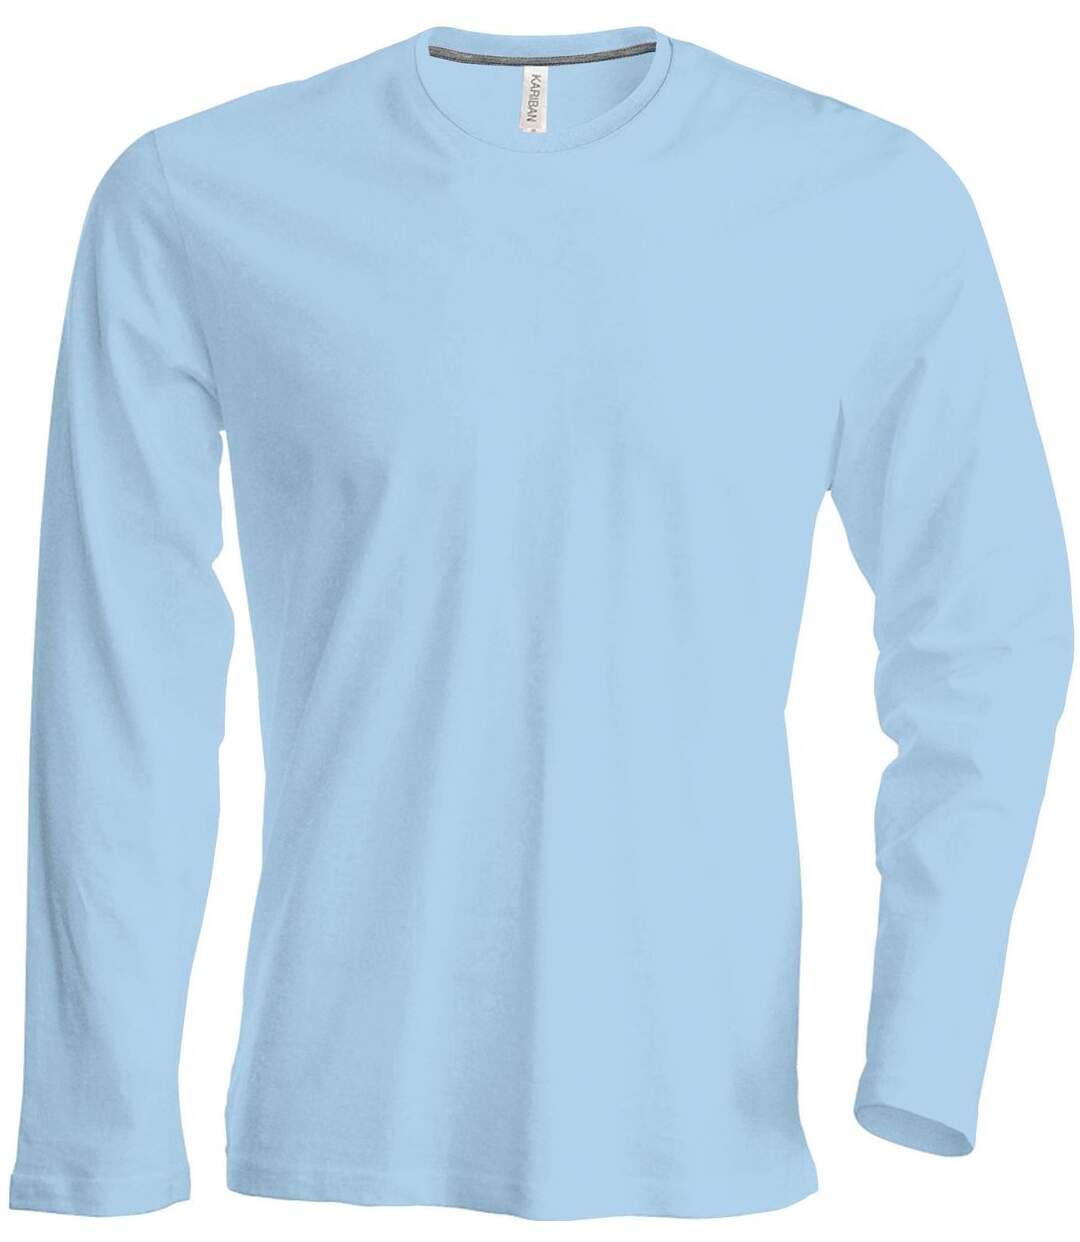 T-shirt manches longues col rond - K359 - bleu ciel - homme